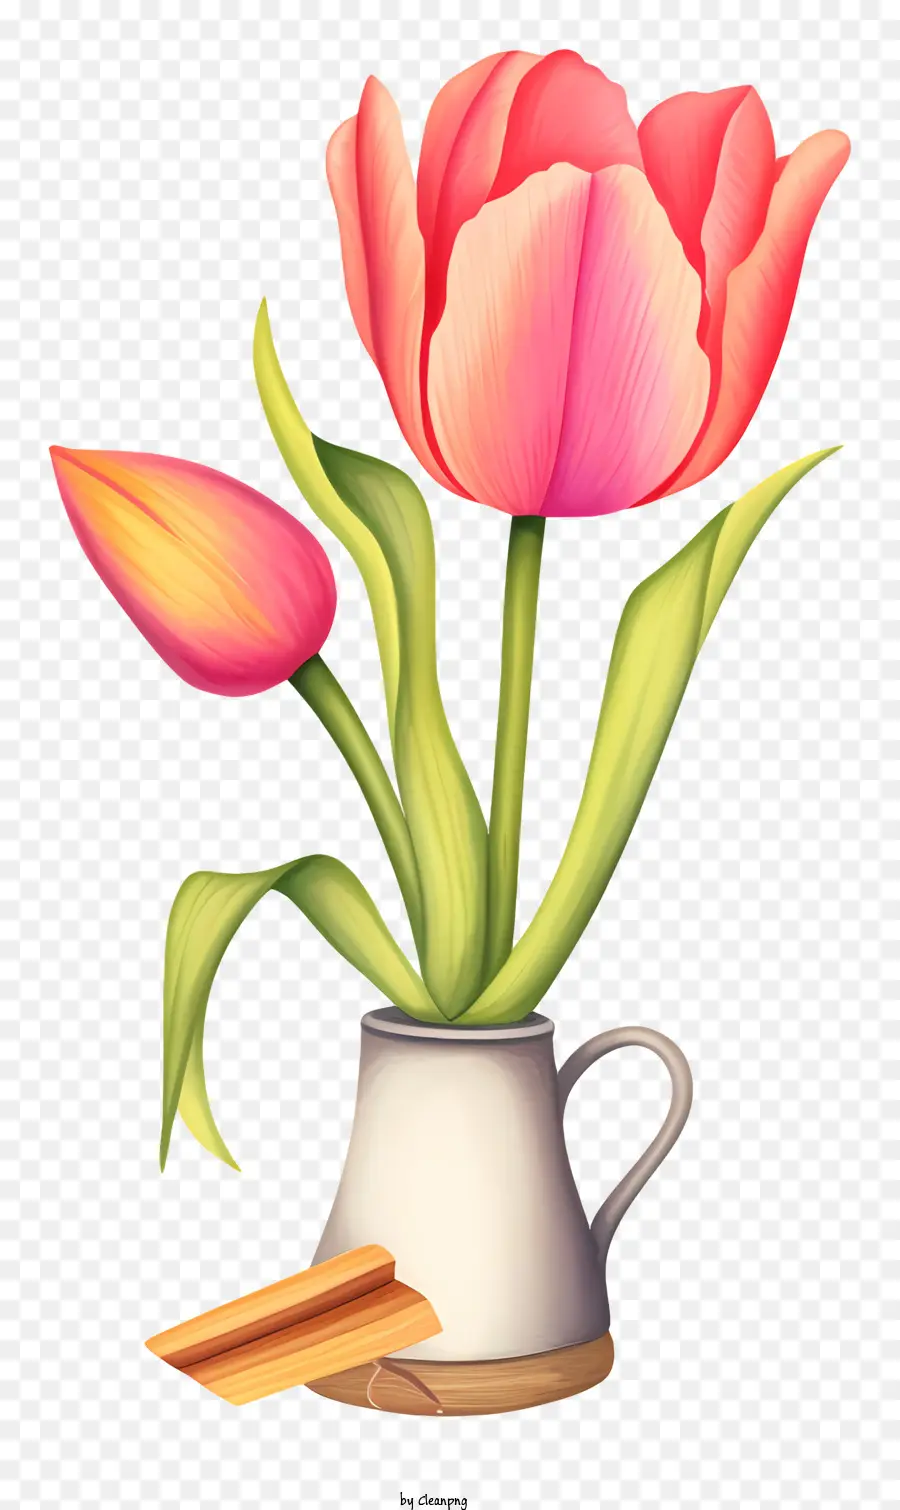 Bánh tay cầm bằng sứ hoa tulip màu hồng - Bình với hoa tulip màu hồng, tay cầm màu trắng, sứ